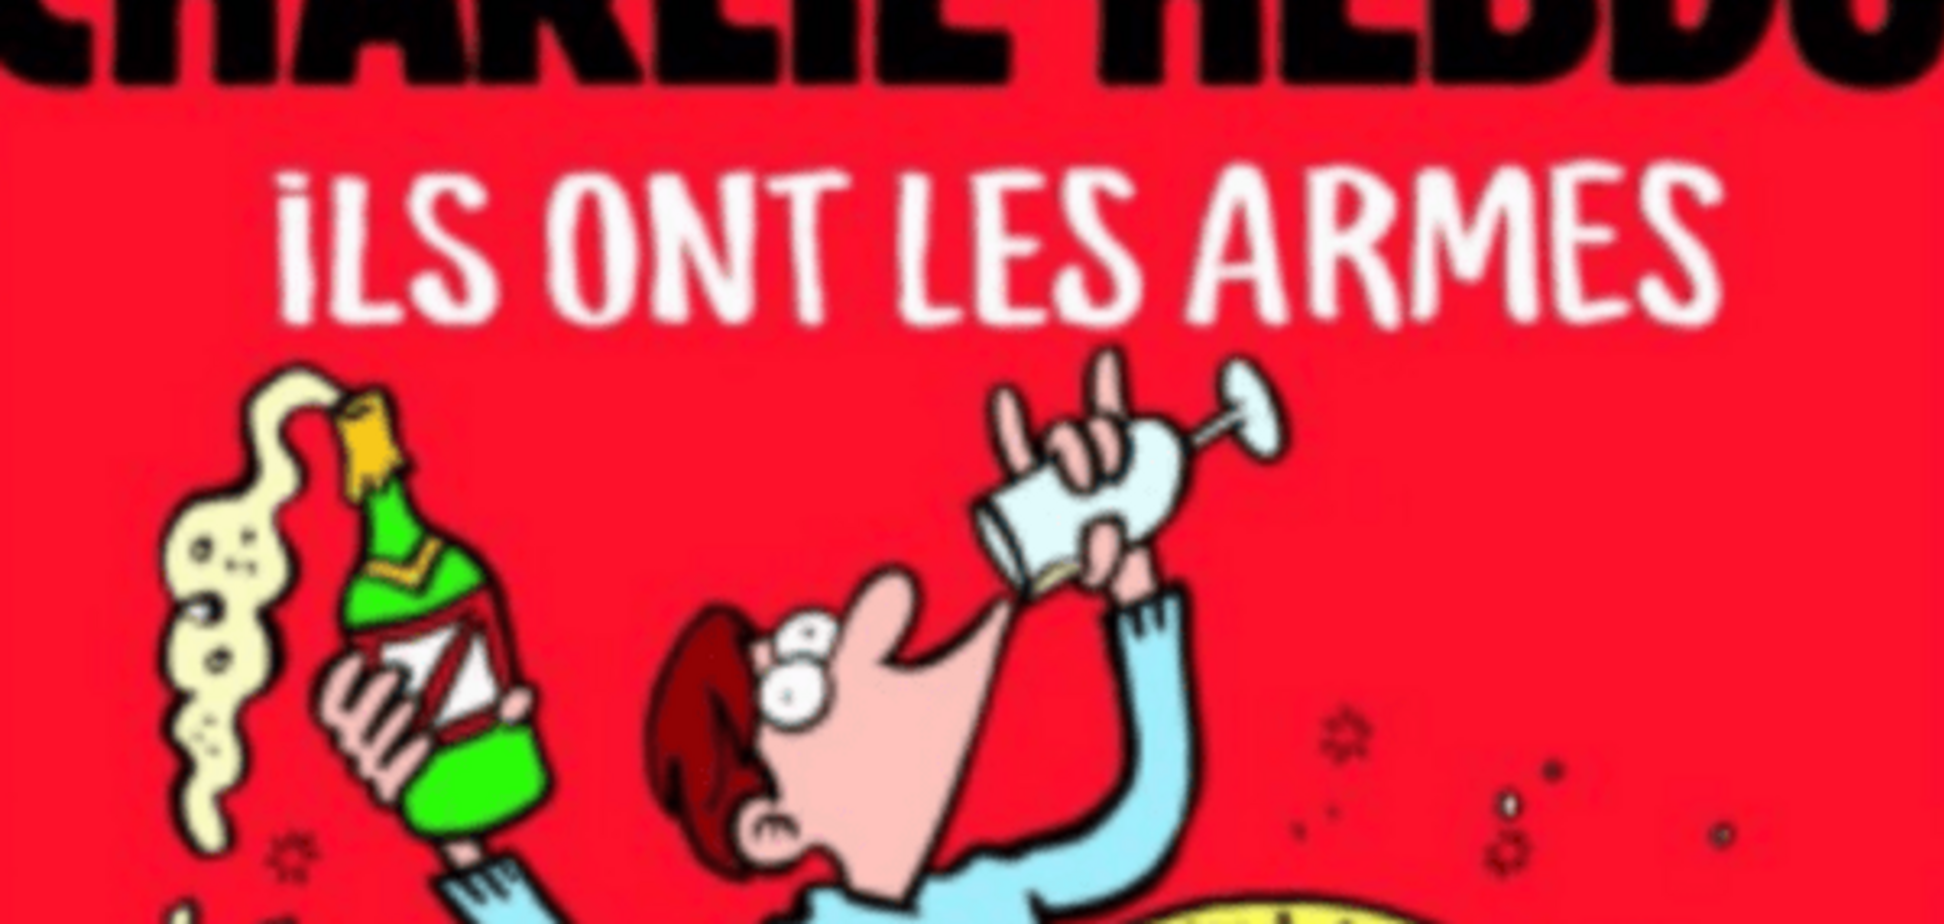 Да пошли они, у нас есть шампанское: Charlie Hebdo опубликовал обложку о терактах в Париже